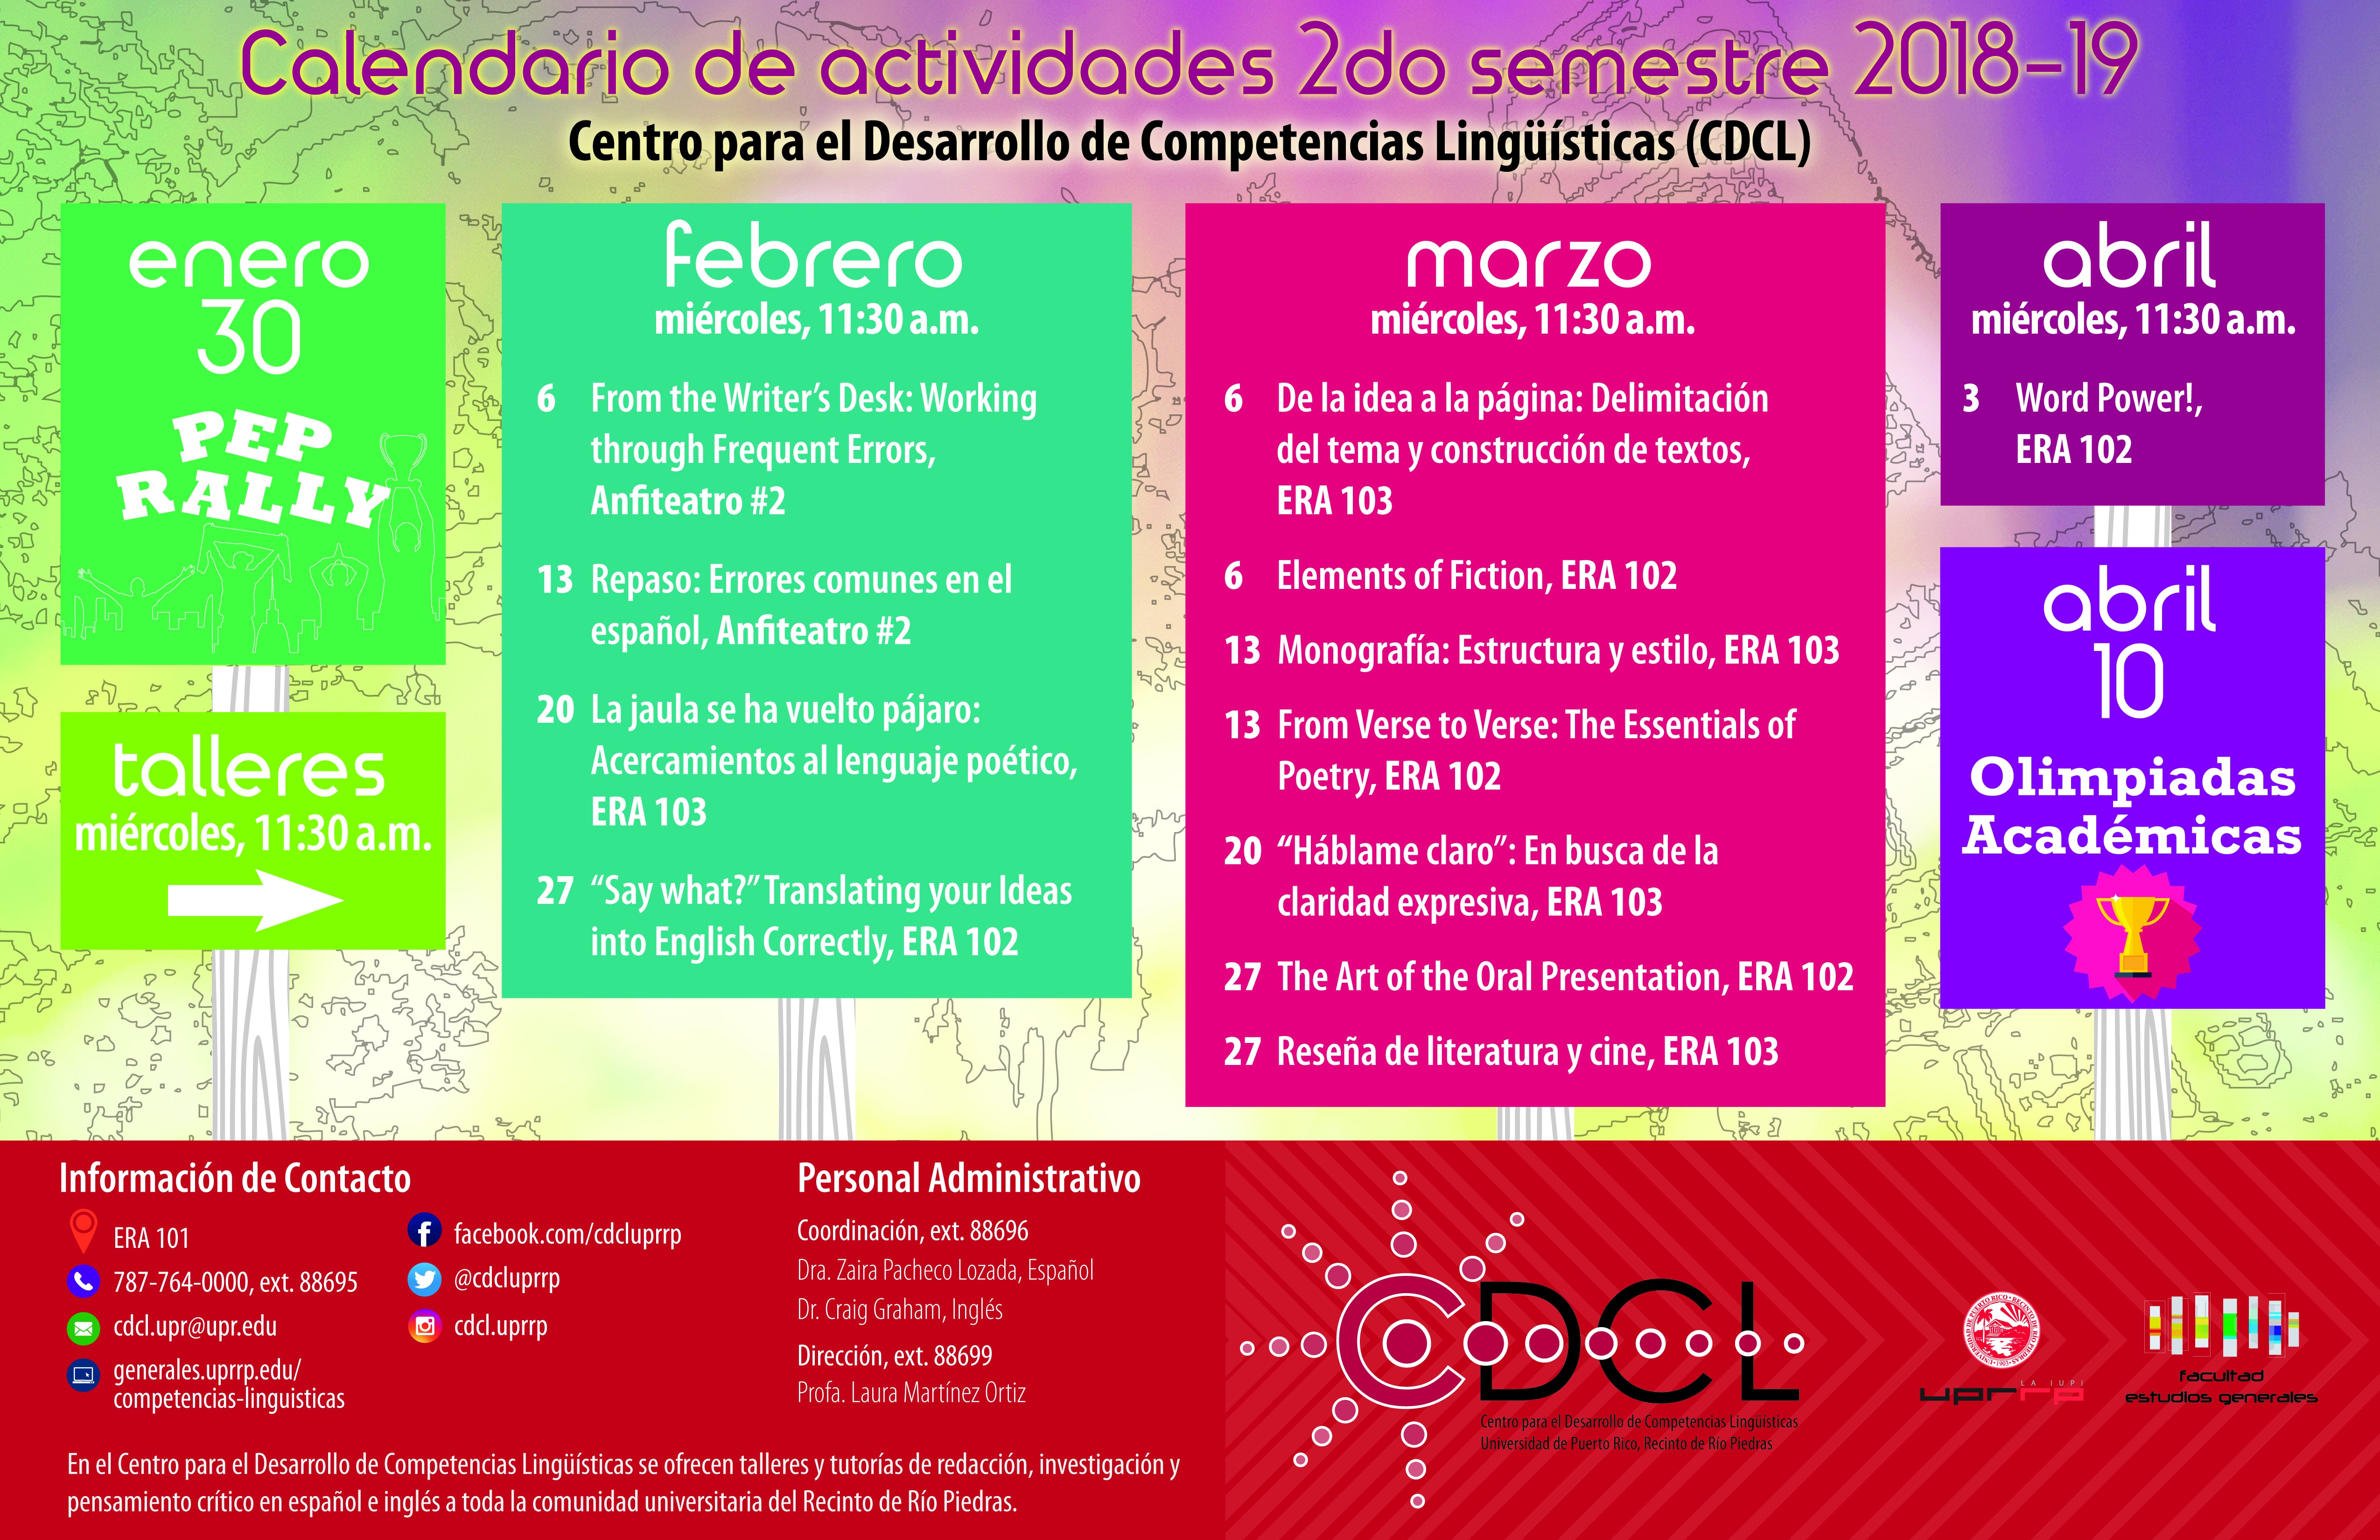 Calendario de actividades segundo semestre 2018-2019 del Centro para el Desarrollo de Competencias Liguisticas 